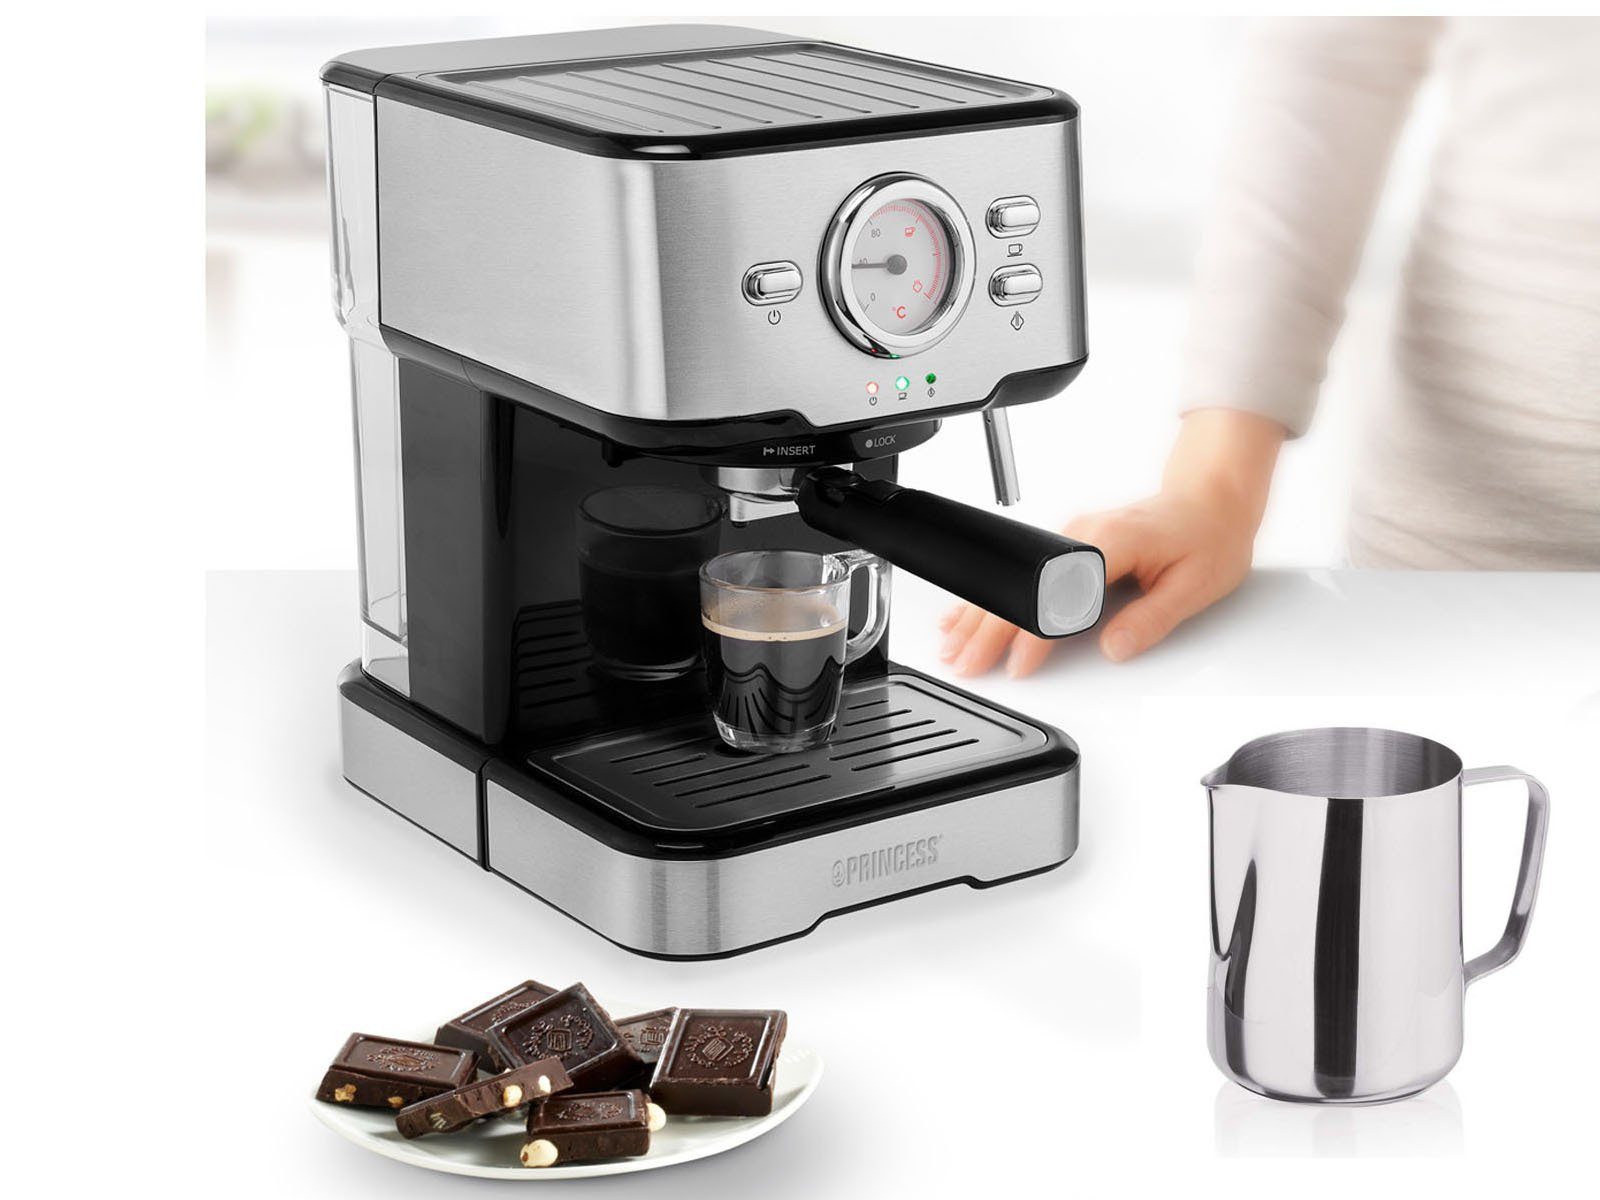 PRINCESS Siebträgermaschine, italienische Siebdruck Kaffee &  Espresso-Maschine mit Milchaufschäumer für Latte Macchiato & Cappuccino,  2in1 auch für Kapseln geeignet online kaufen | OTTO